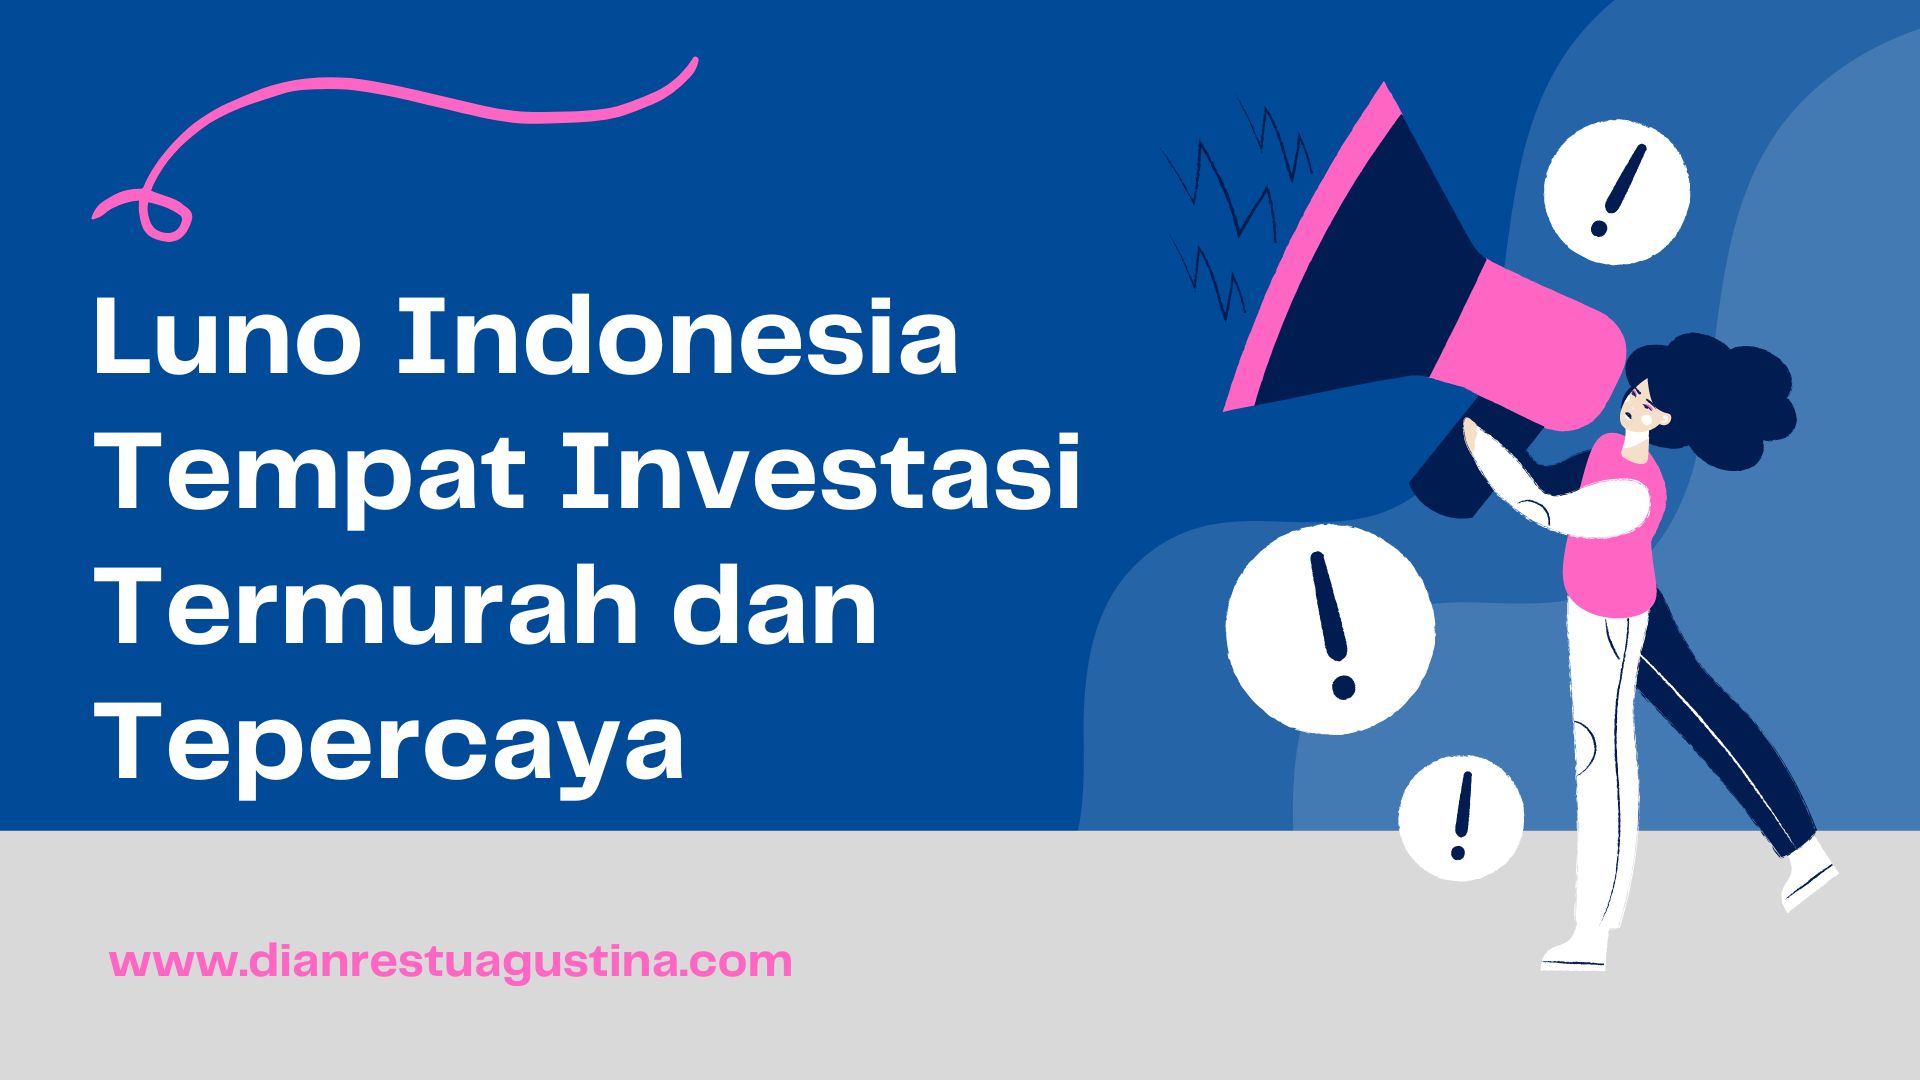 Luno Indonesia Tempat Investasi Termurah dan Tepercaya